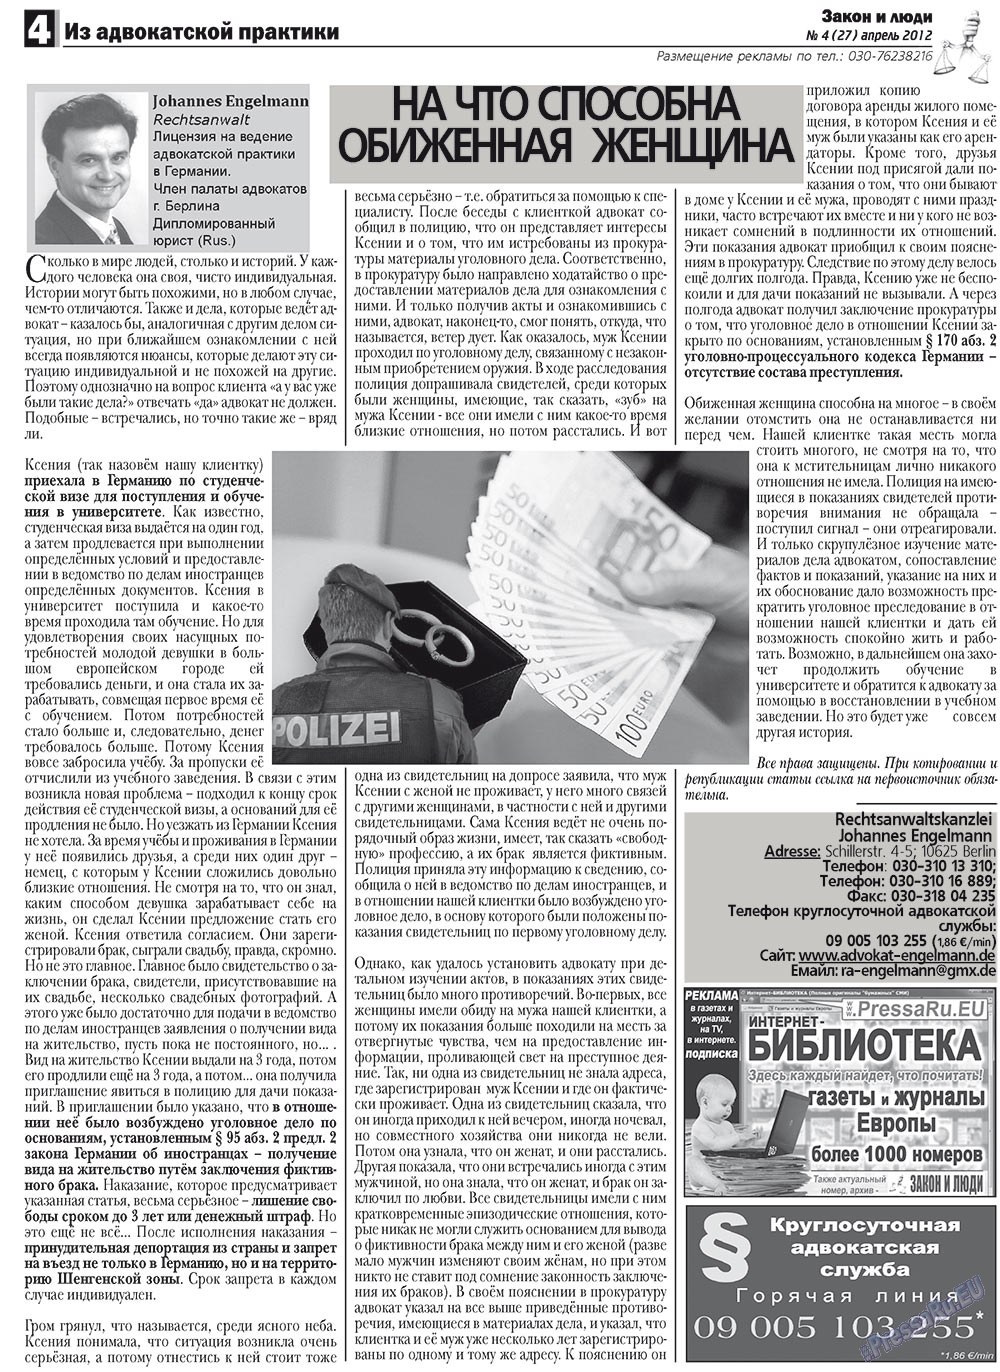 Закон и люди, газета. 2012 №4 стр.4